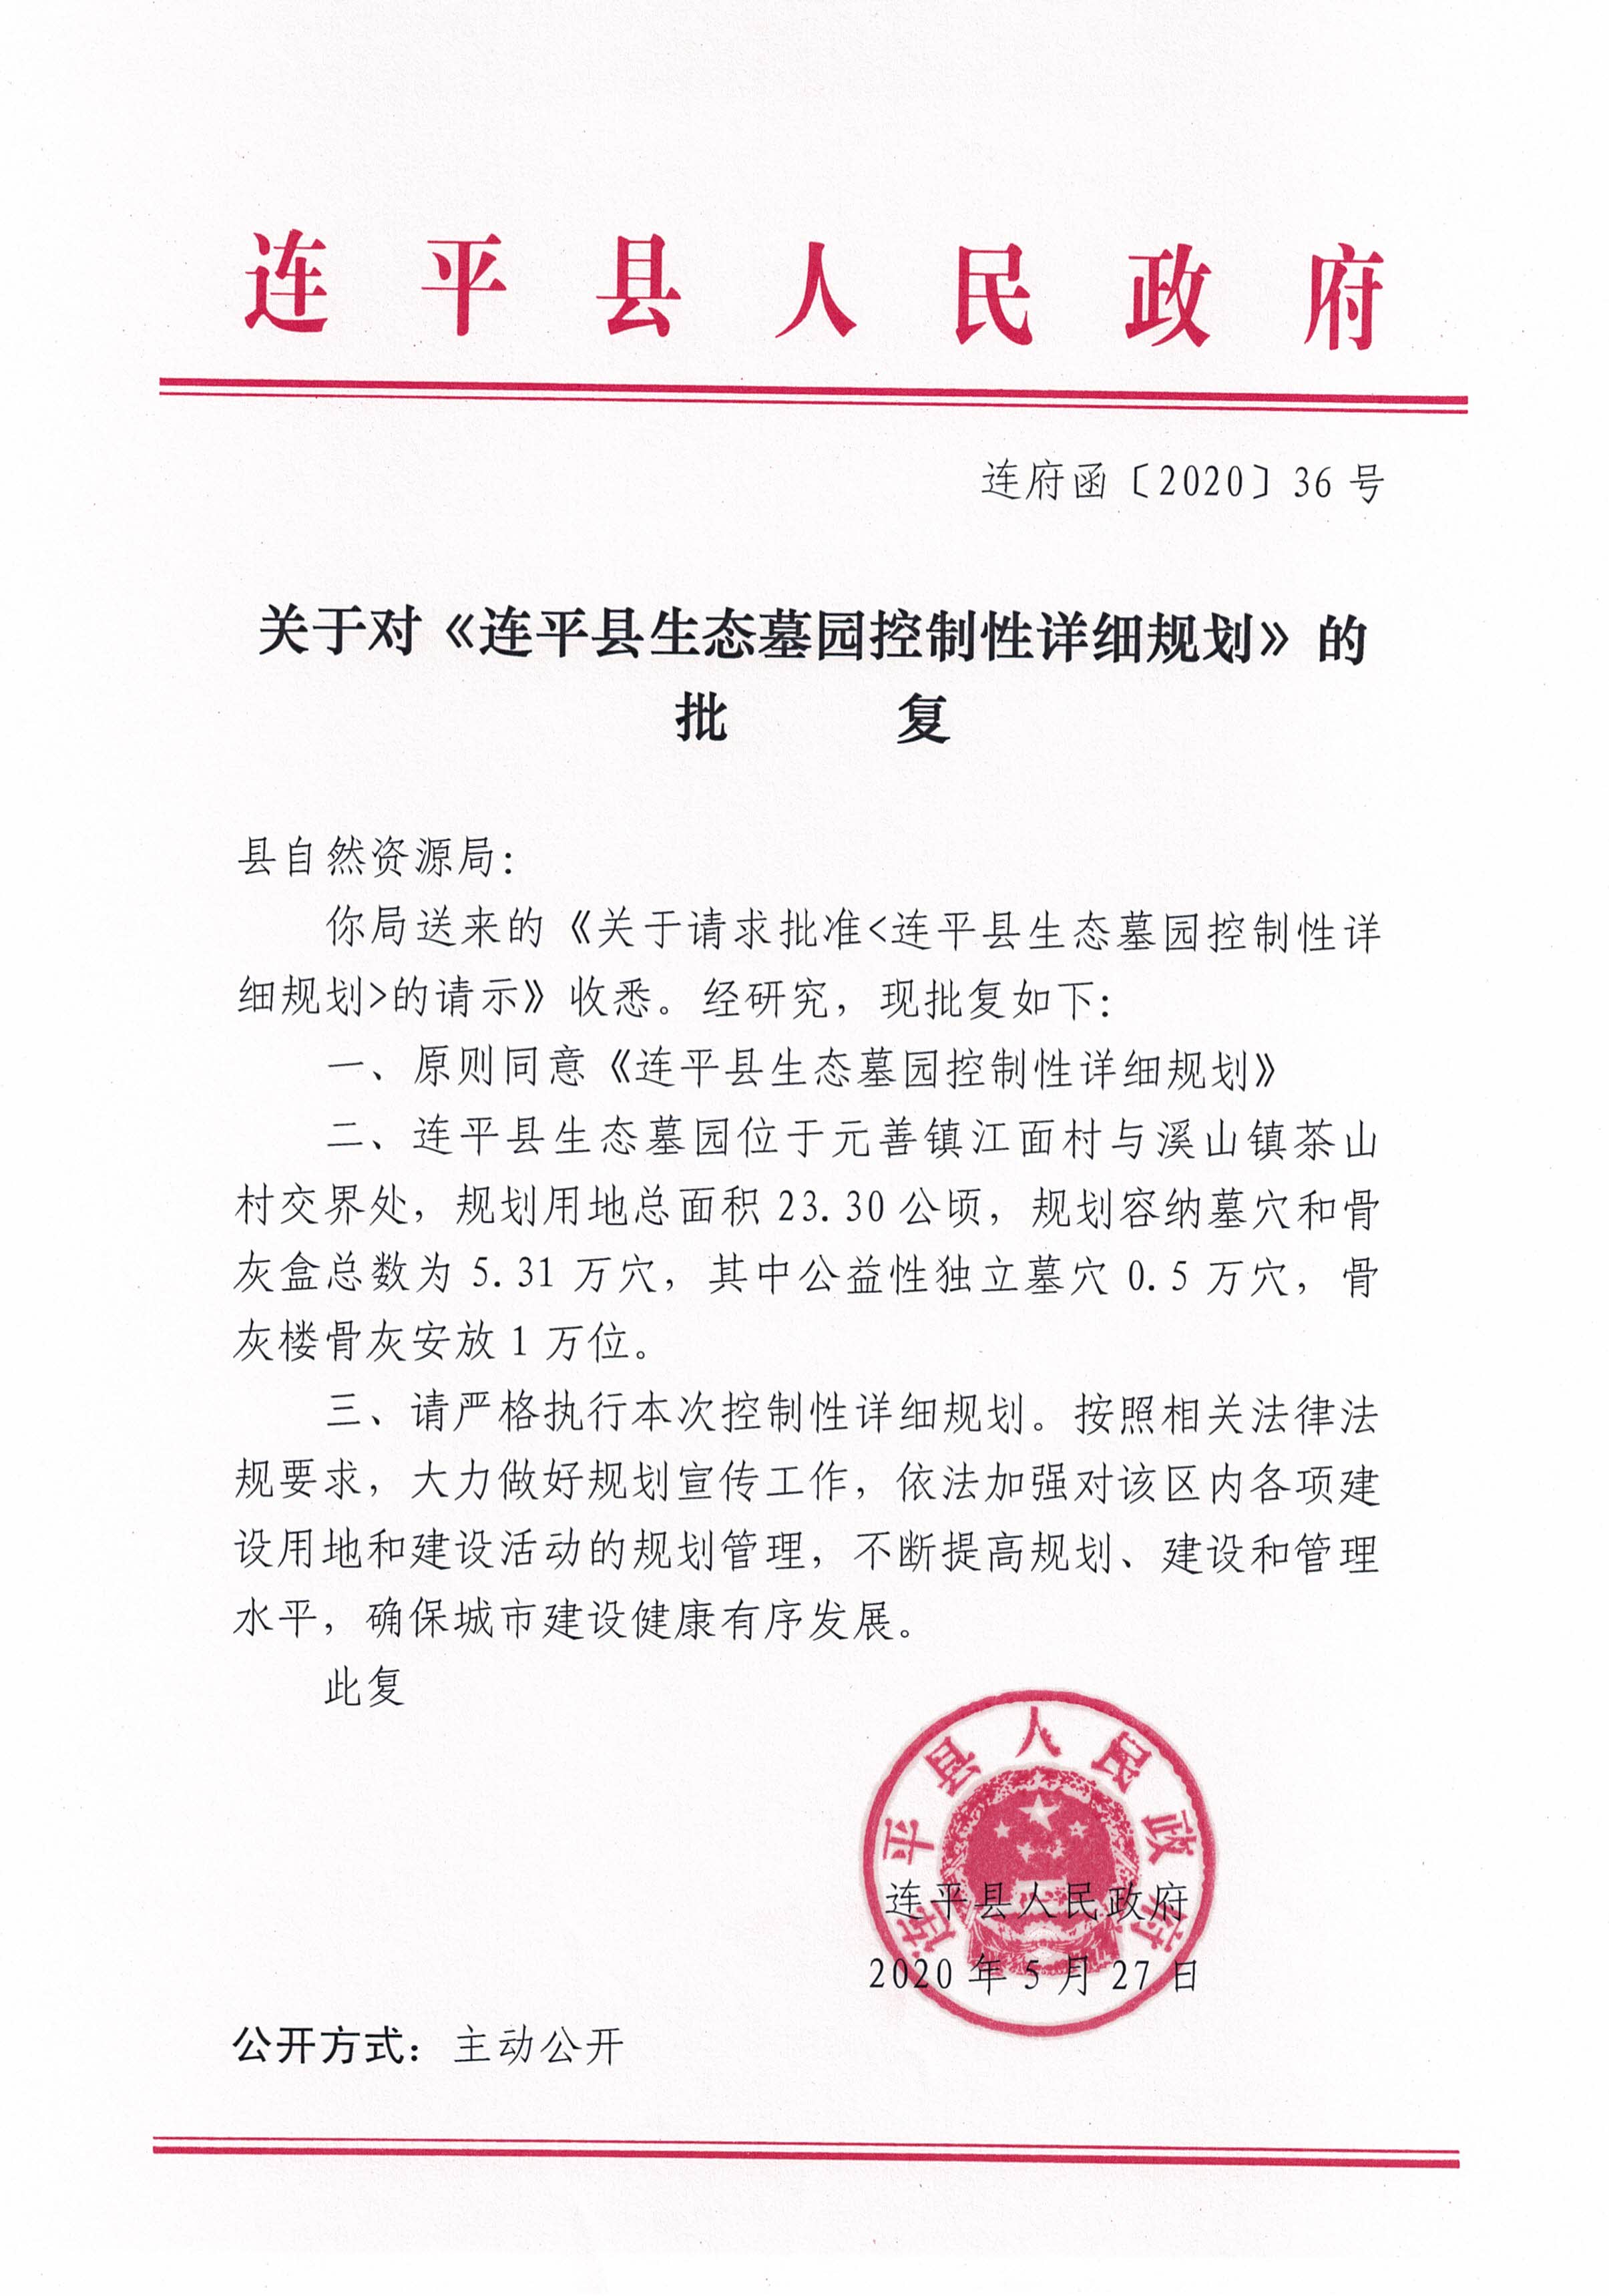 连平县生态墓园控制性详细规划批后公布稿_页面_2.jpg